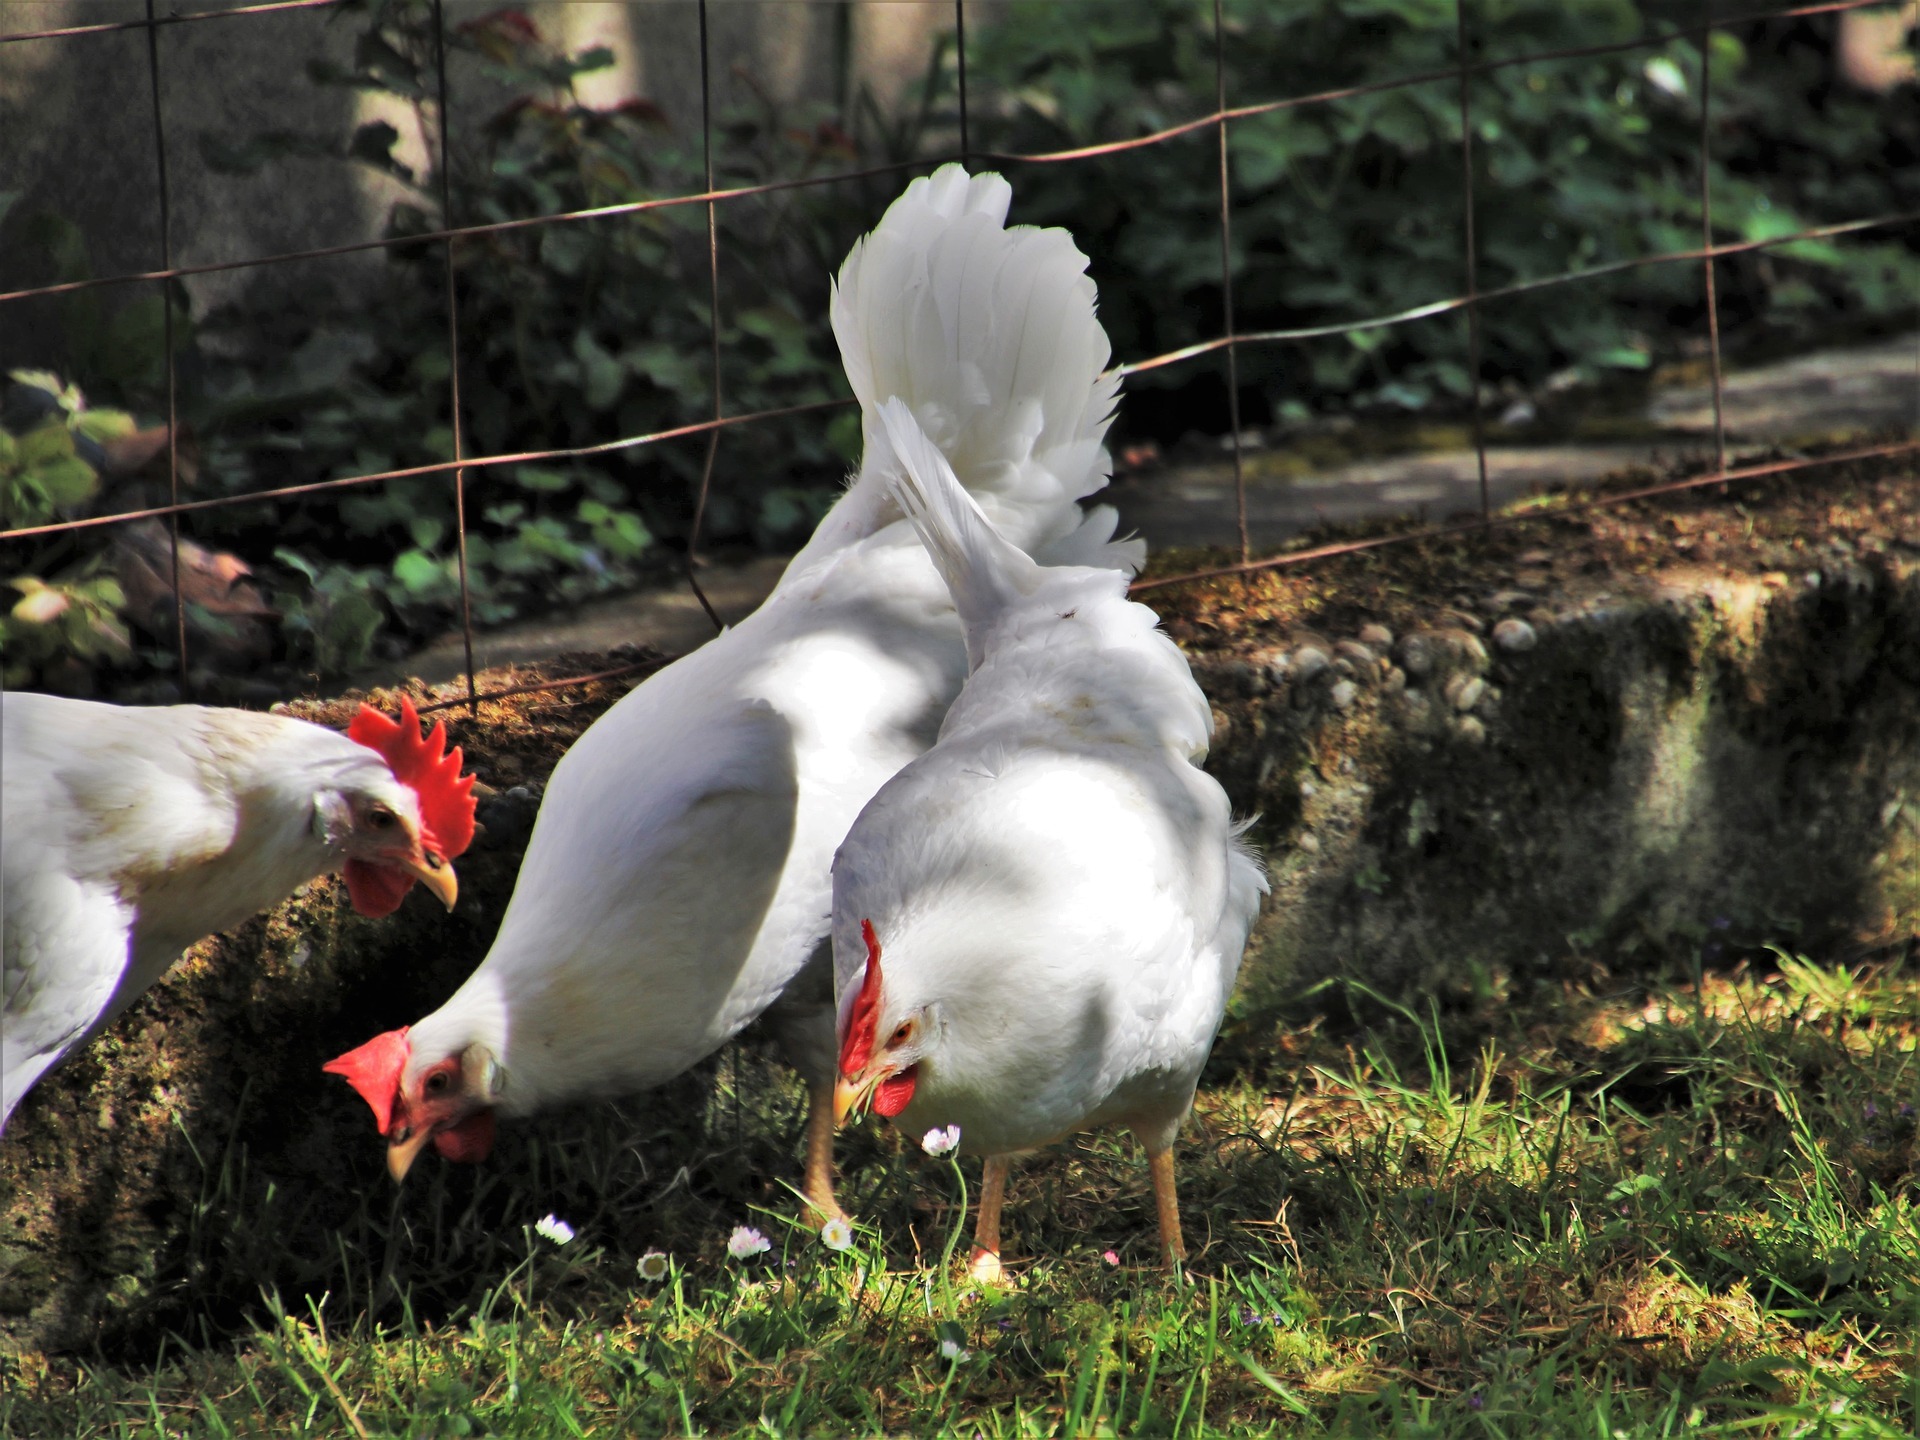 Ponederos para gallinas: todo lo que debes saber para el cuidado